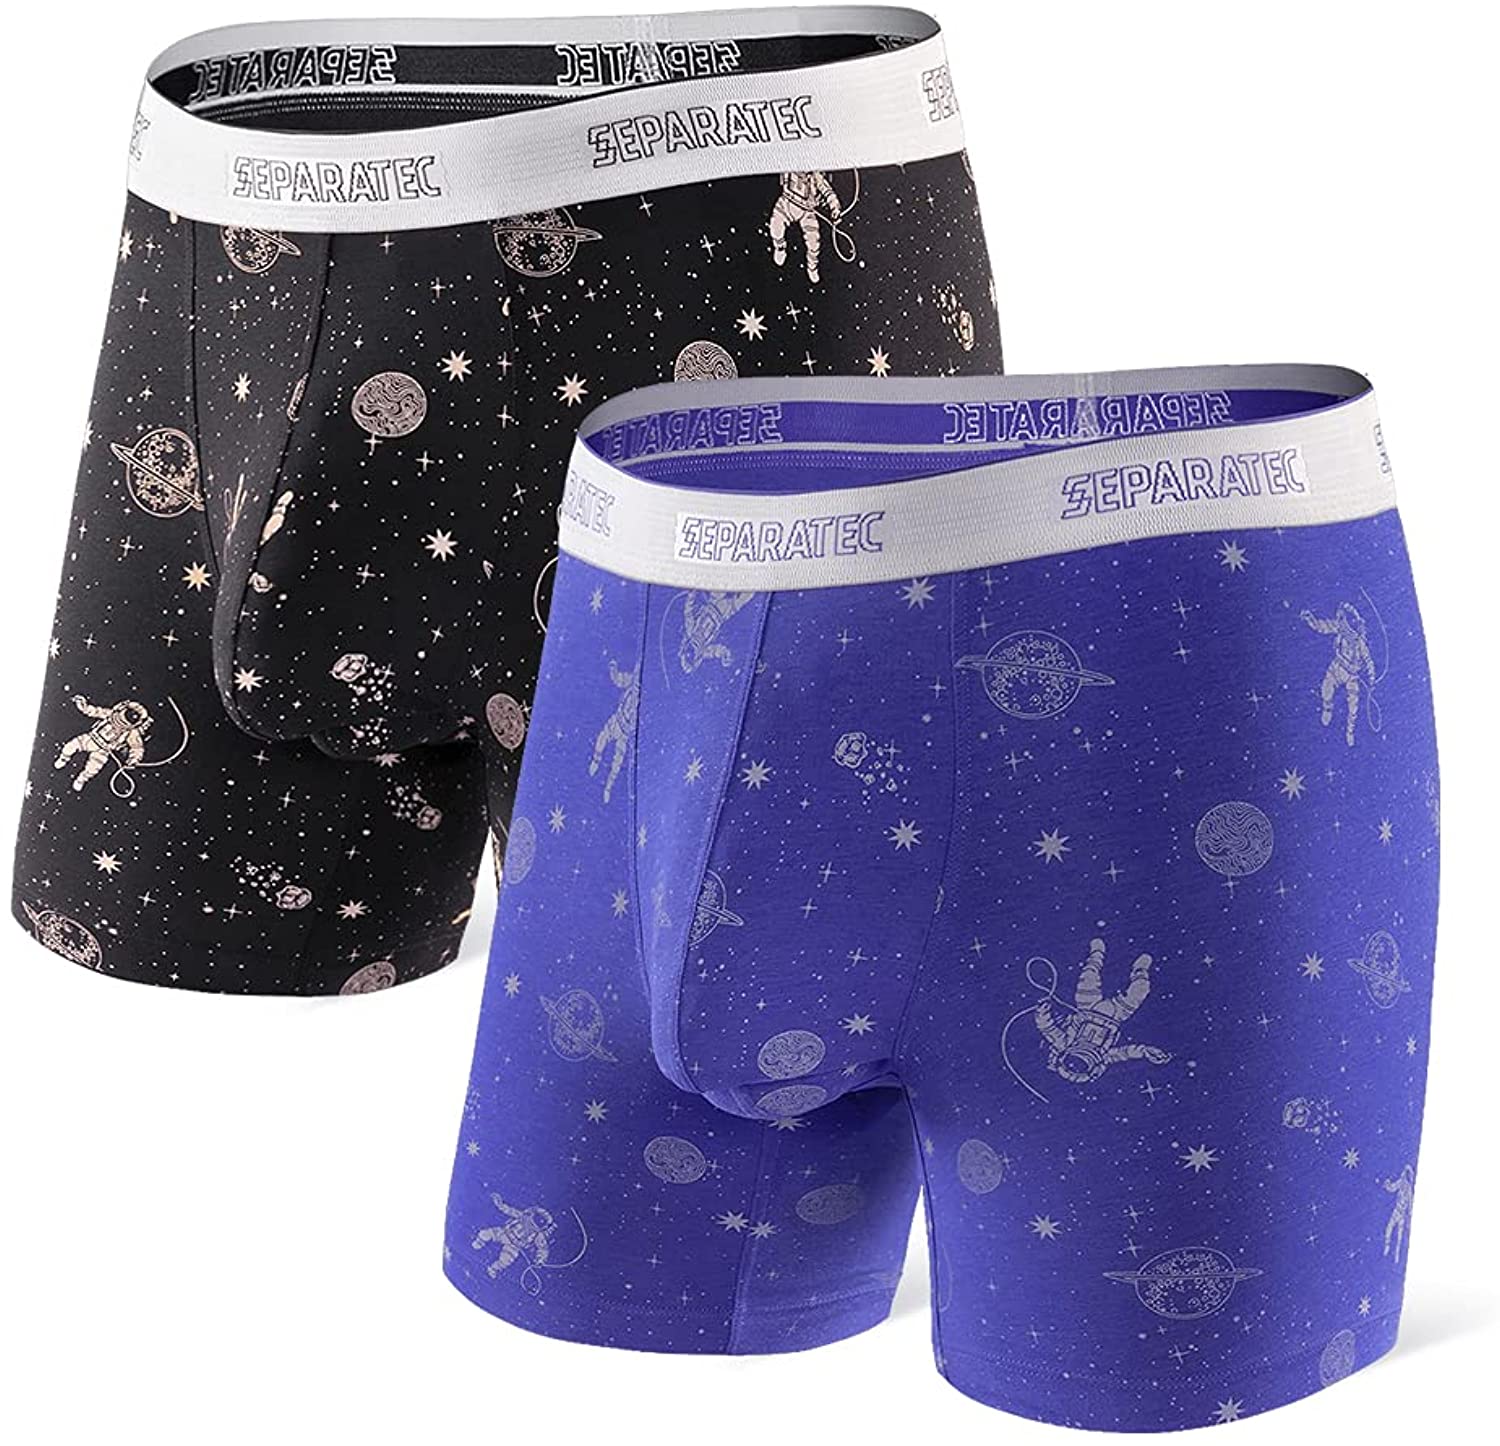 Separatec Men's Dual Pouch Underwear Comfort Flex Fit Premium Cotton Modal  Blend Boxer Briefs 2 Pack